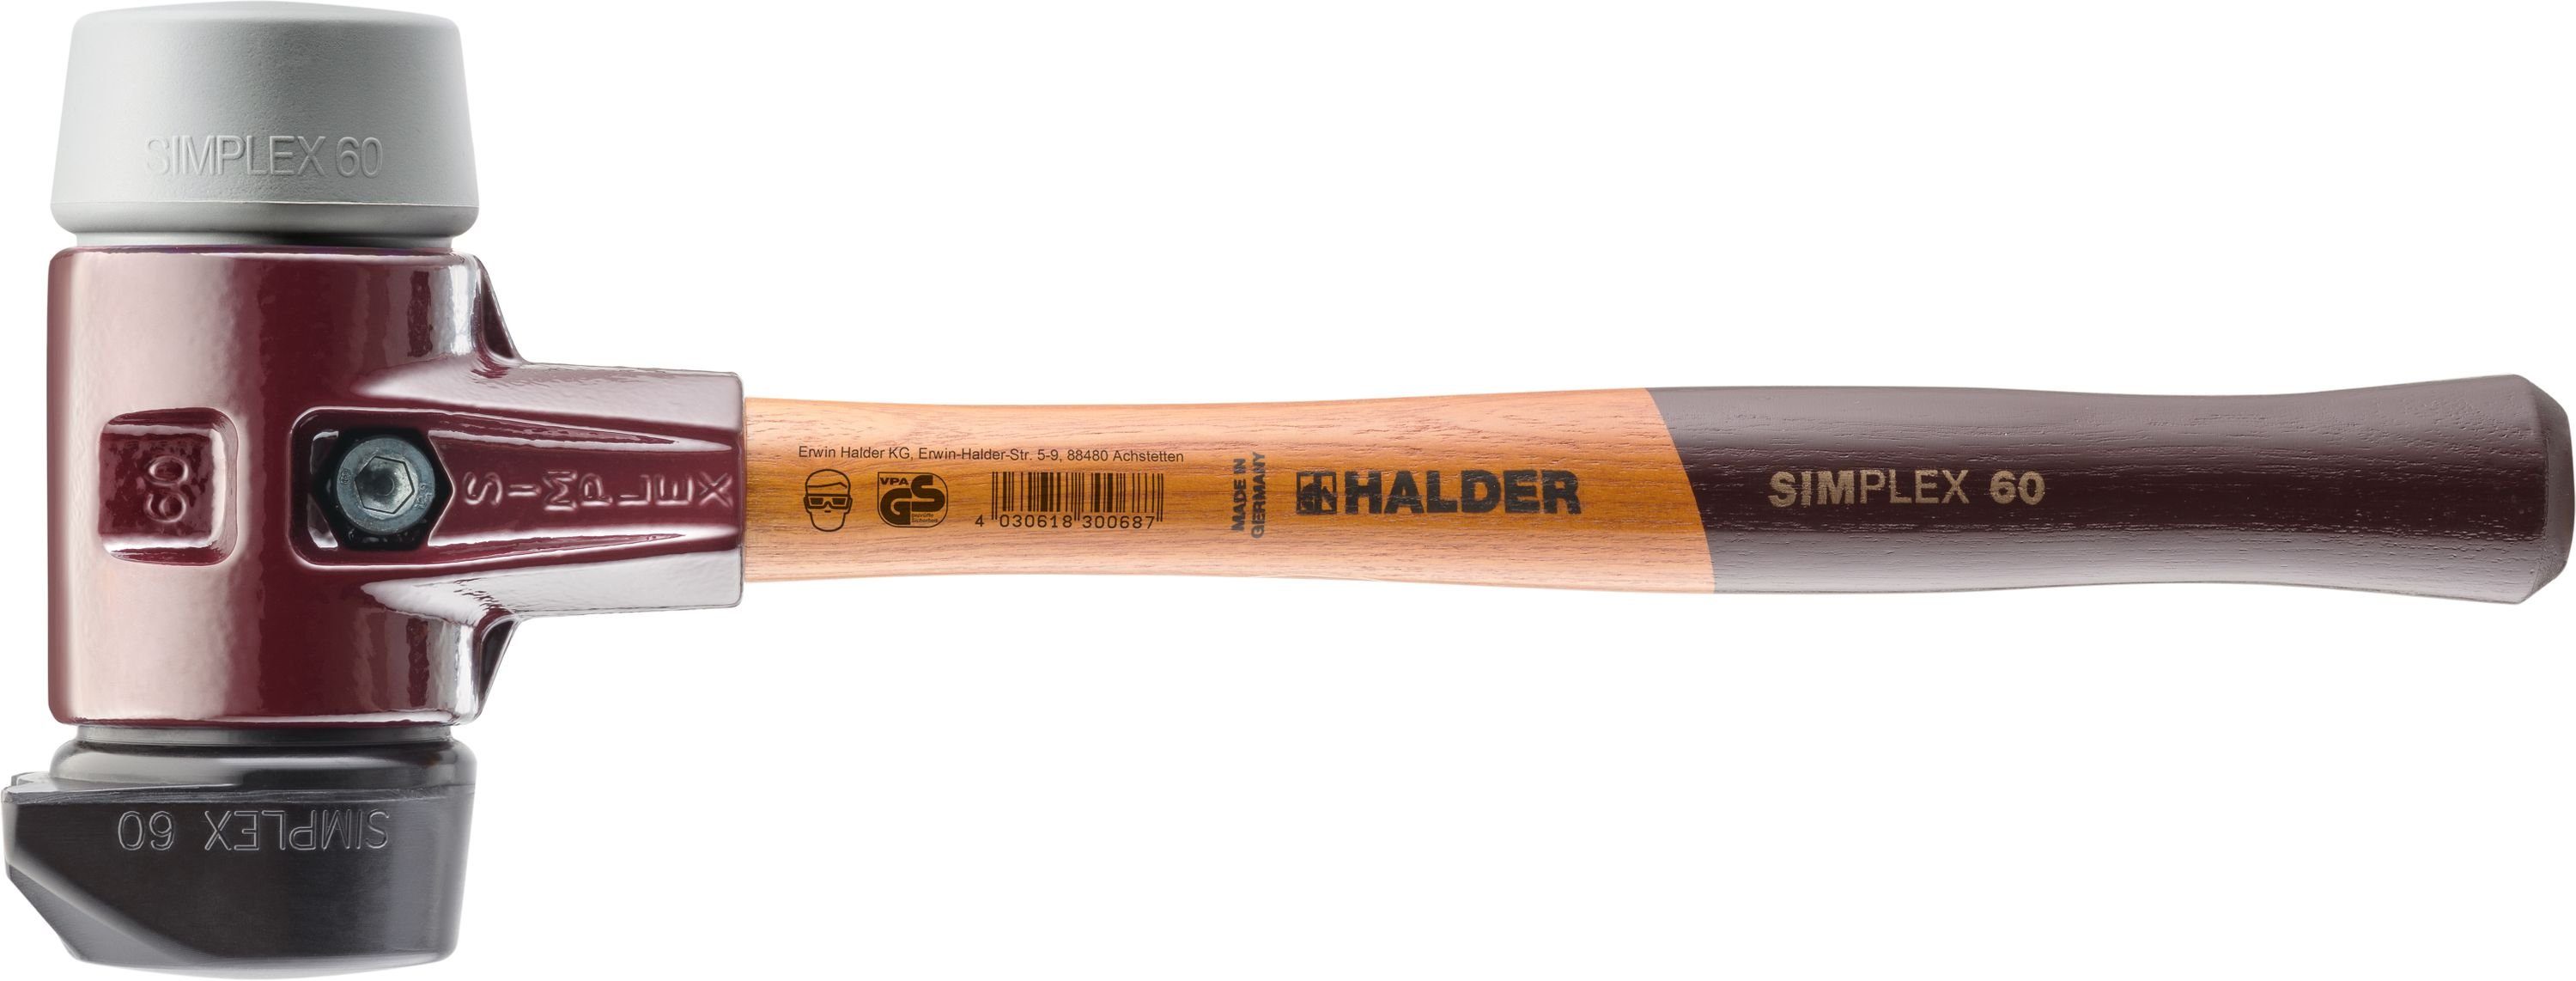 Halder KG Hammer Halder Simplex-Schonhammer 60mm mit Standfuß und 2 Schlageinsätzen Gummi mittelhart & TPE mittelhart - 3023.260